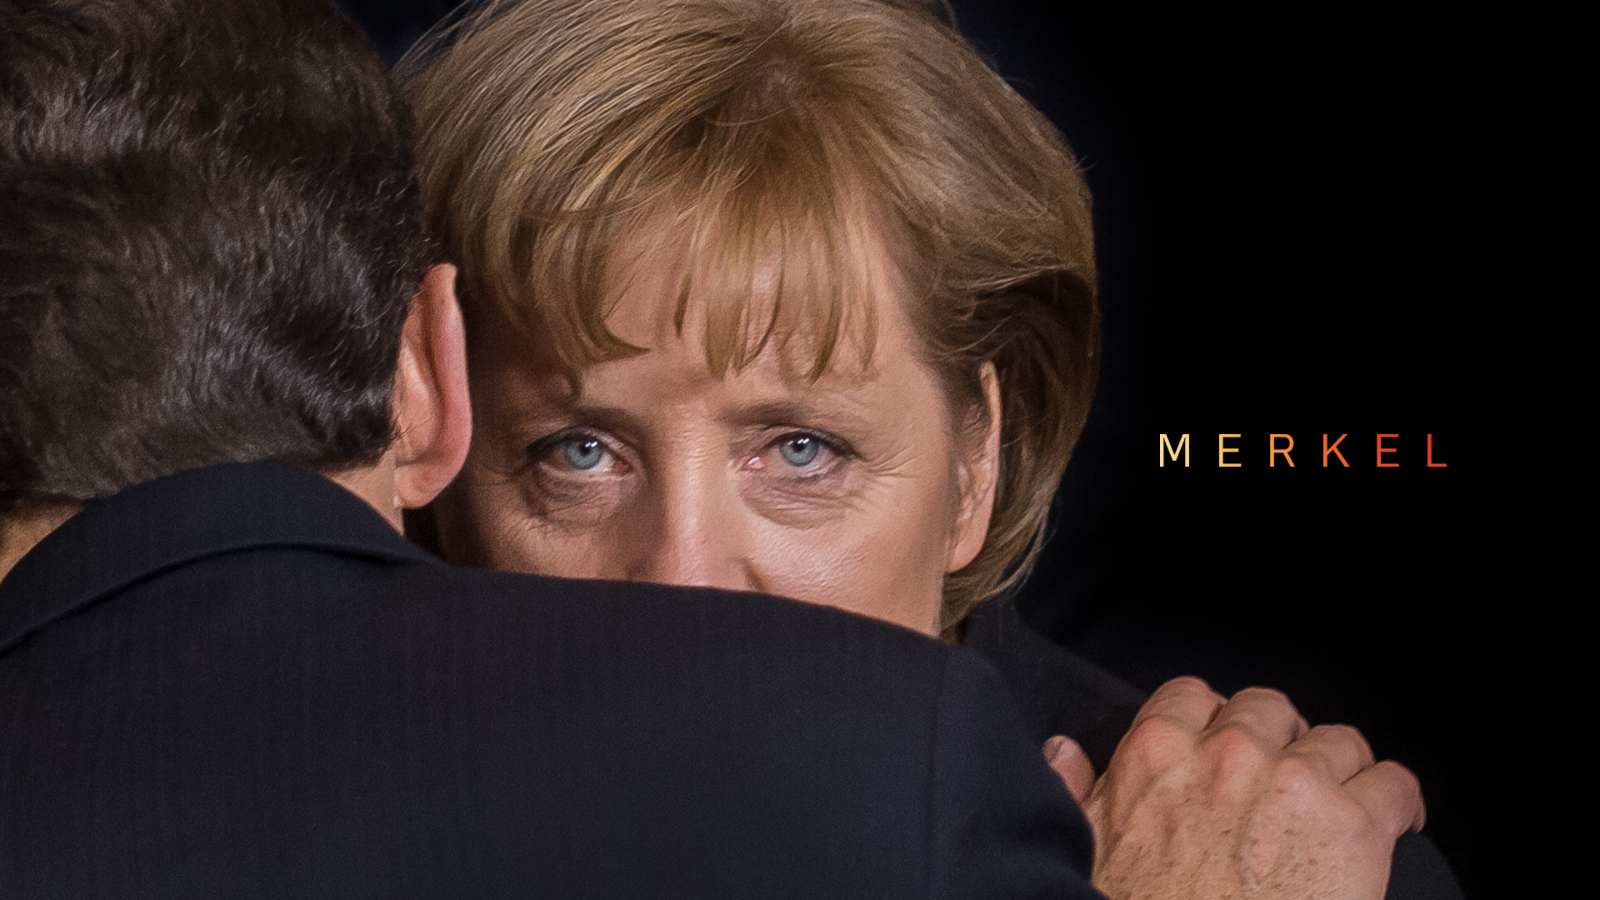 Merkel key art. Angela Merkel peering over man's shoulder.